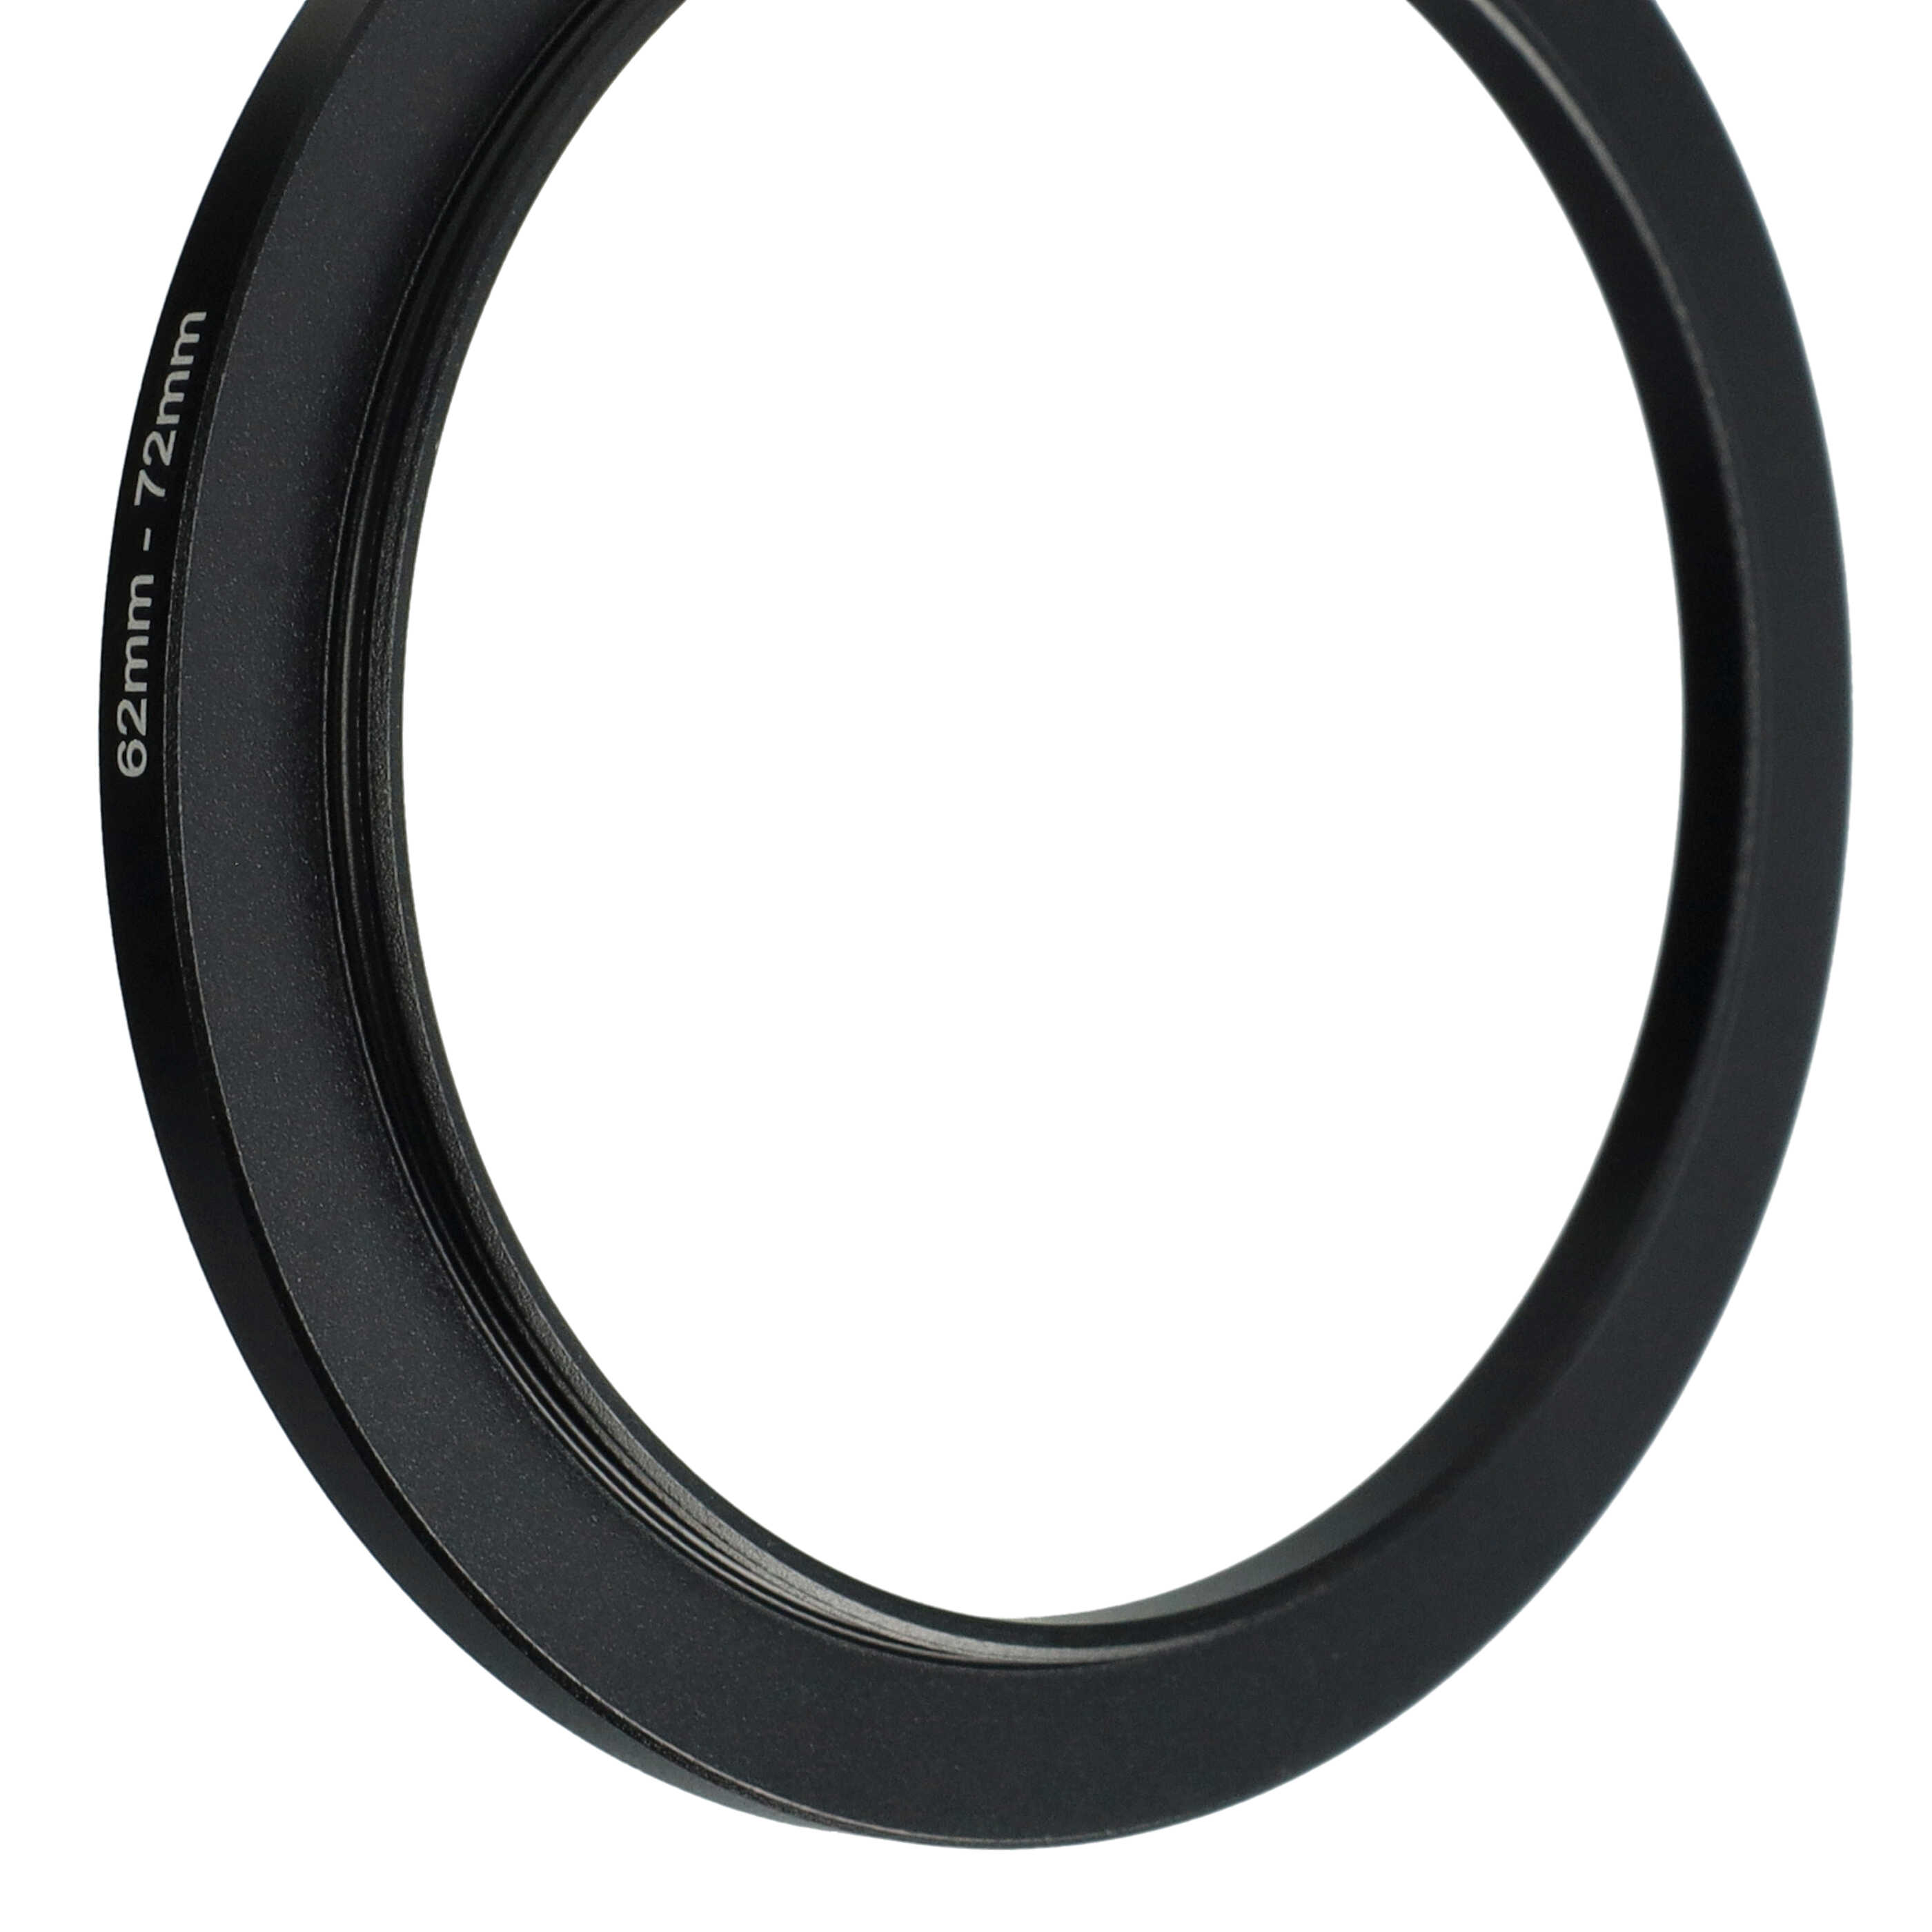 Step-Up-Ring Adapter 62 mm auf 72 mm passend für diverse Kamera-Objektive - Filteradapter